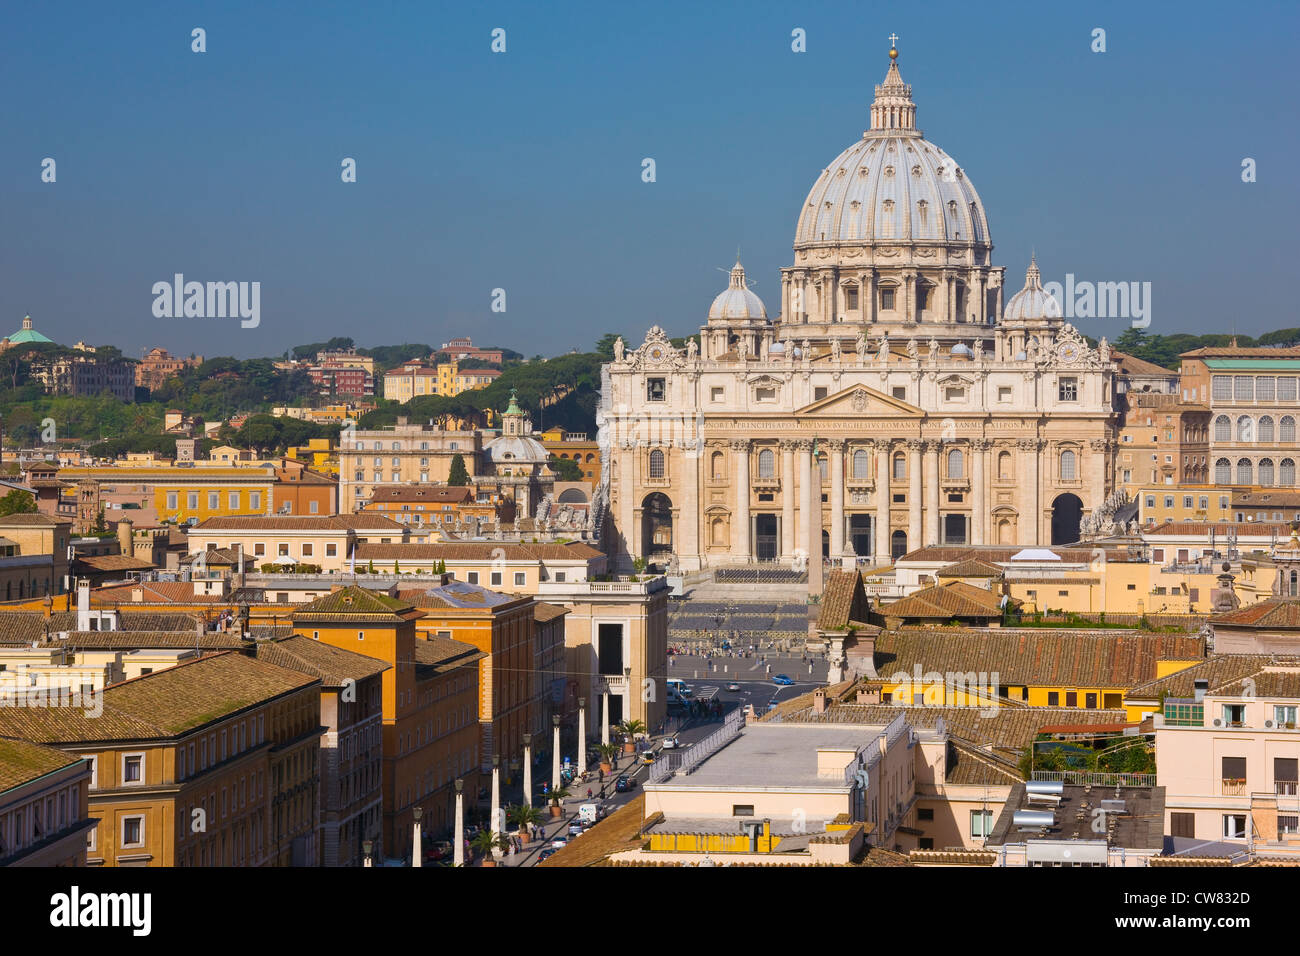 Portrait de la Cité du Vatican et la Basilique Saint Pierre, Rome, Italie Banque D'Images